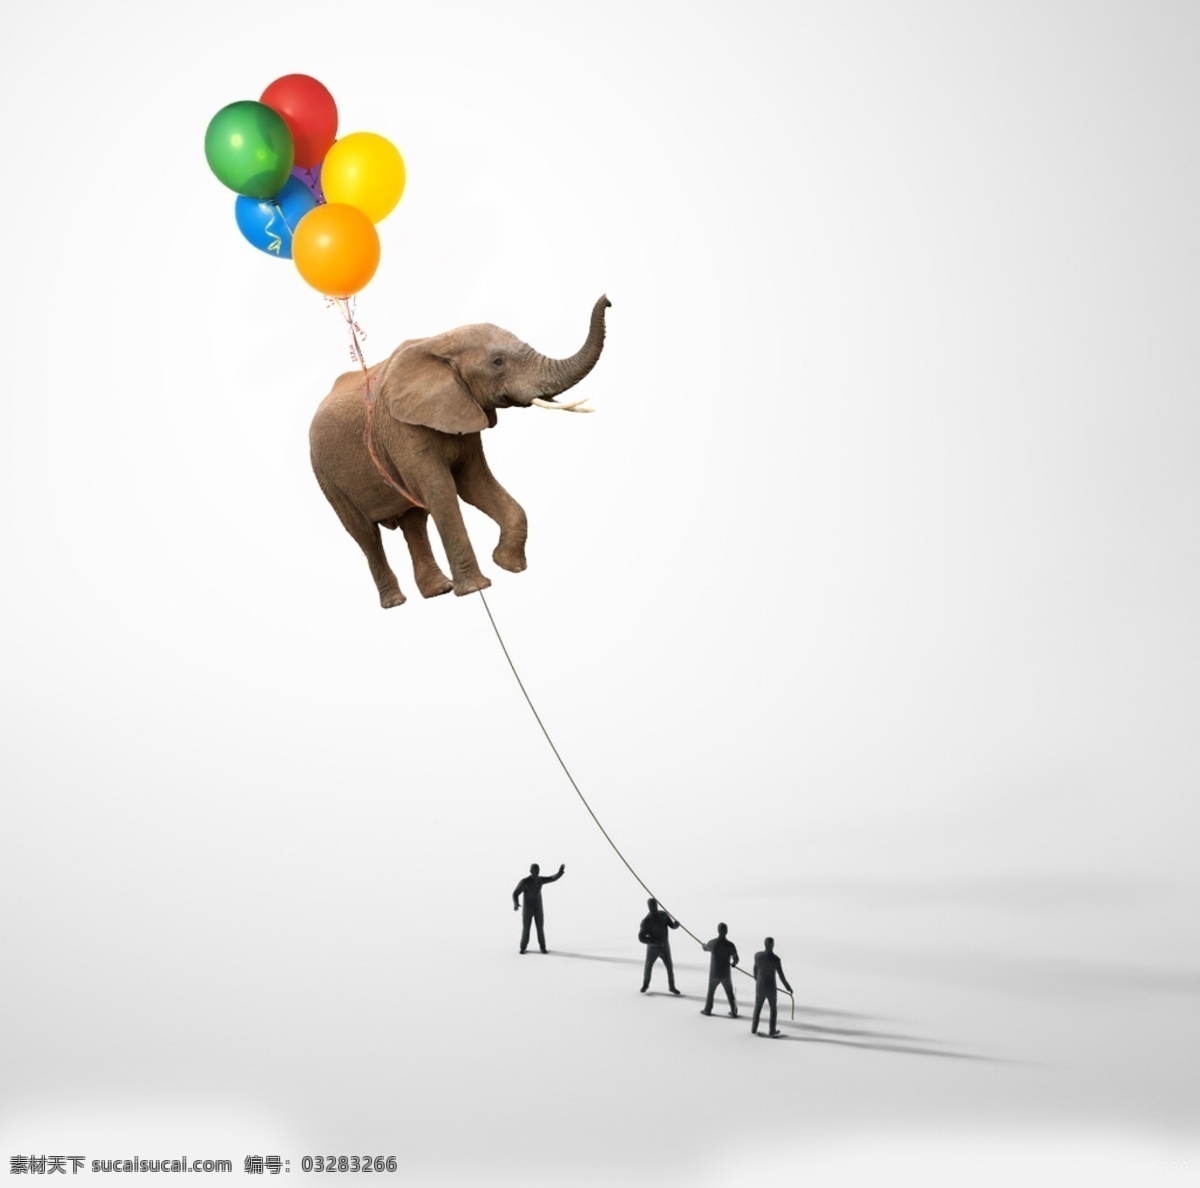 气球 拉大 象 小人儿 拉扯 大象 白色 拉大象 人 拉绳子 科技 蓝色 海报 壁纸 幻想 时代